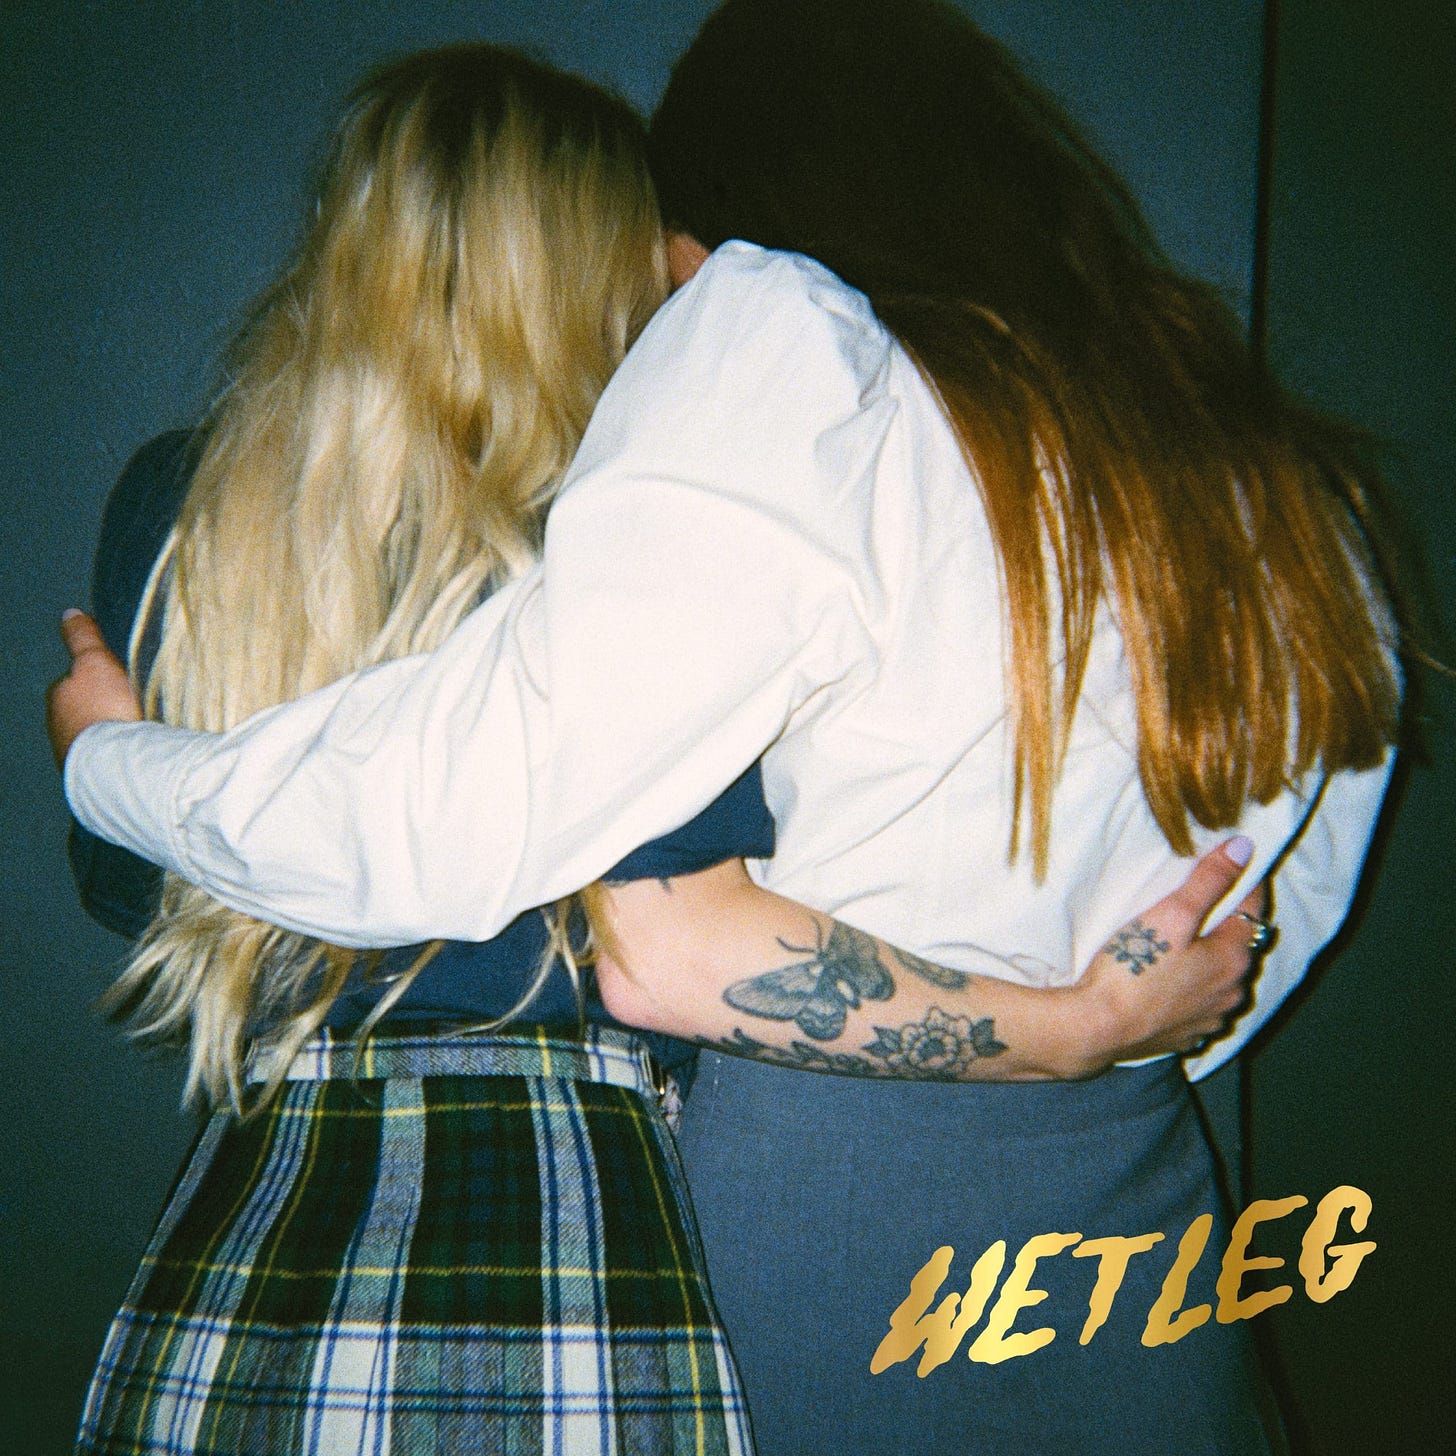 Wet Leg - Wet Leg Album Review - Indie is not a genre